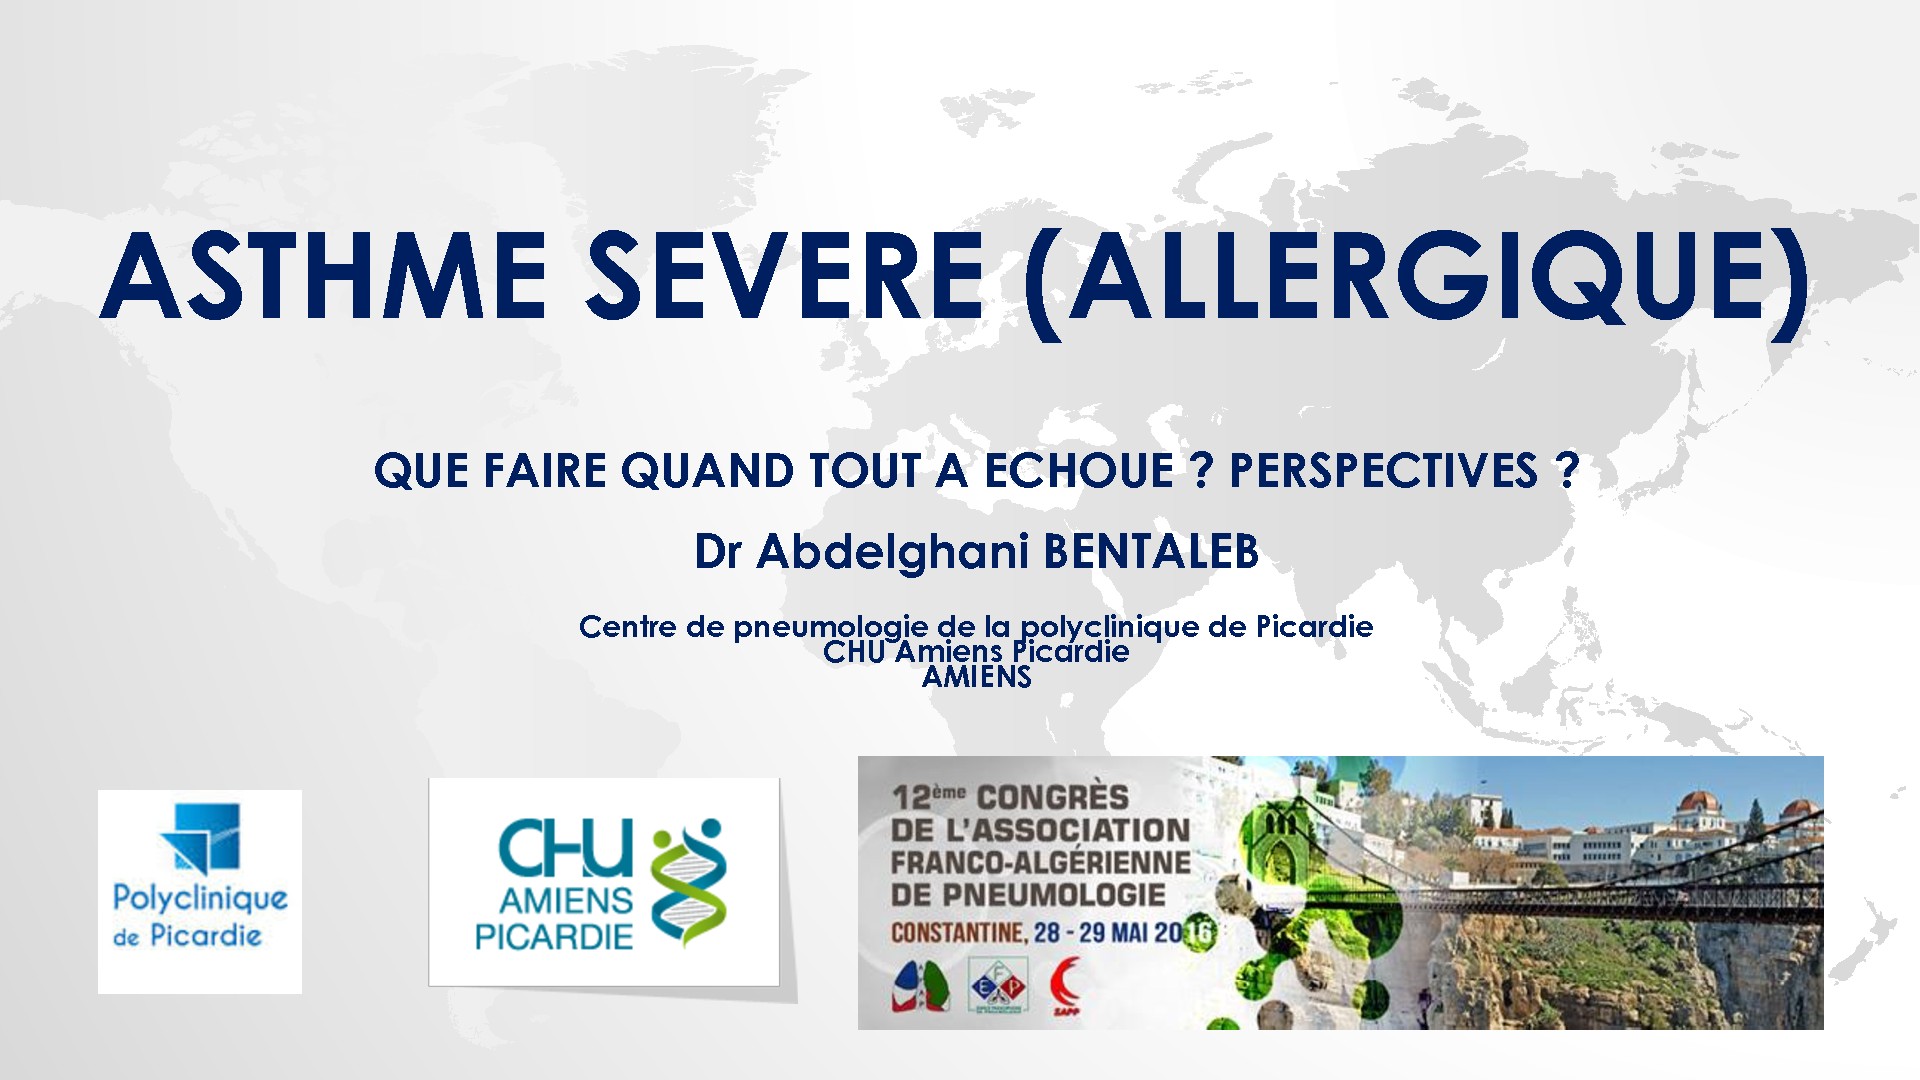 Asthme Sévère (Allergique) que faire quand tout a échoué, Perspectives. Dr Abdelghani BEN TALEB